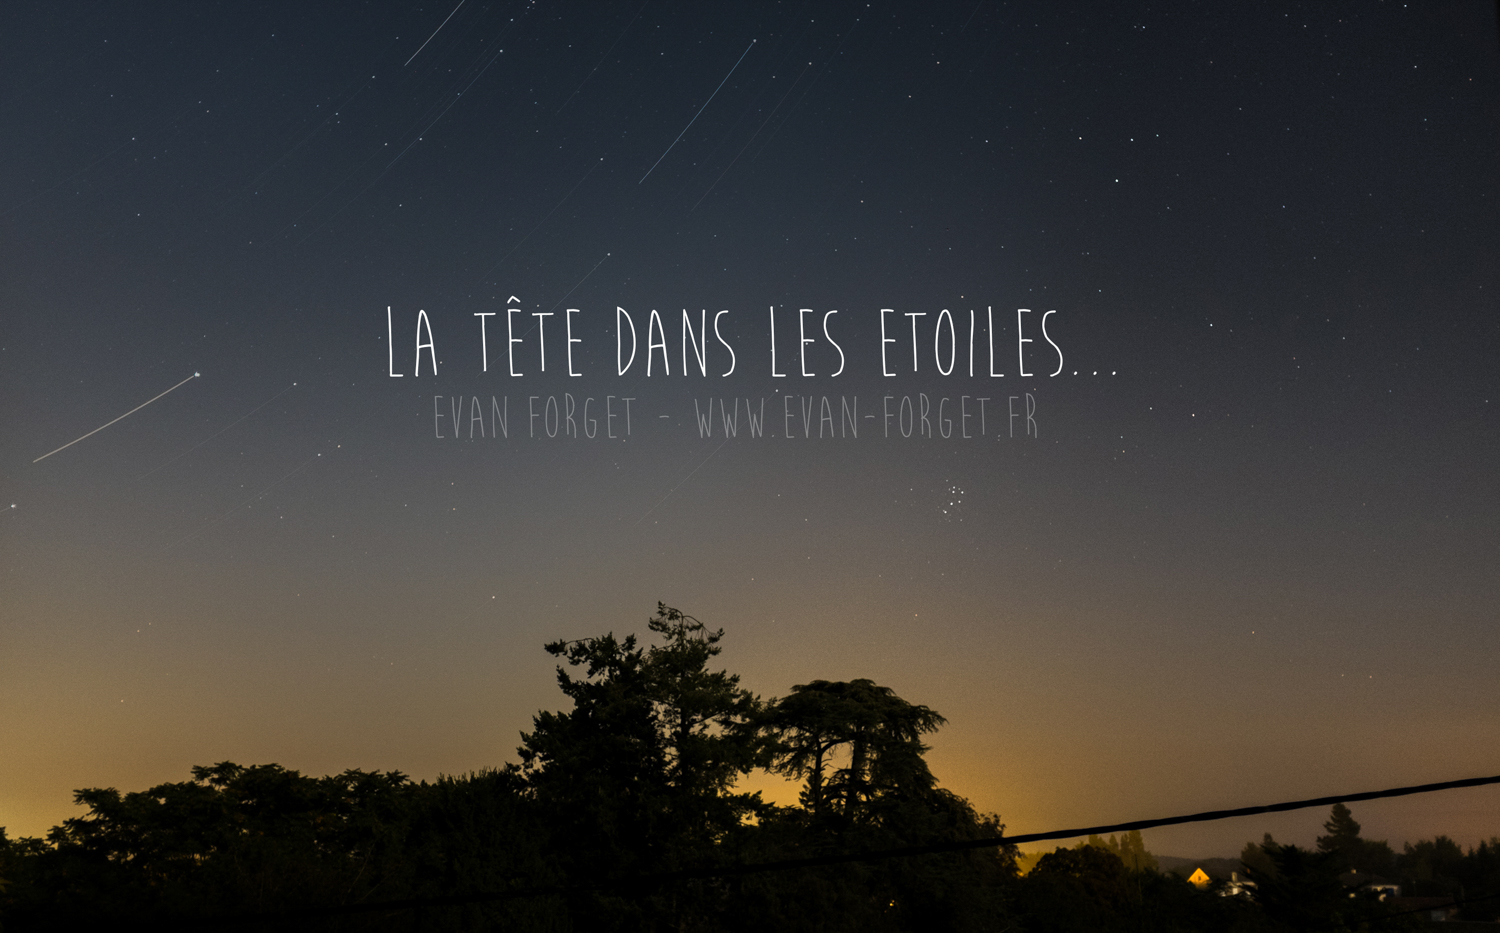 Evan Forget – Photographe sur Nantes / Ciel étoilé